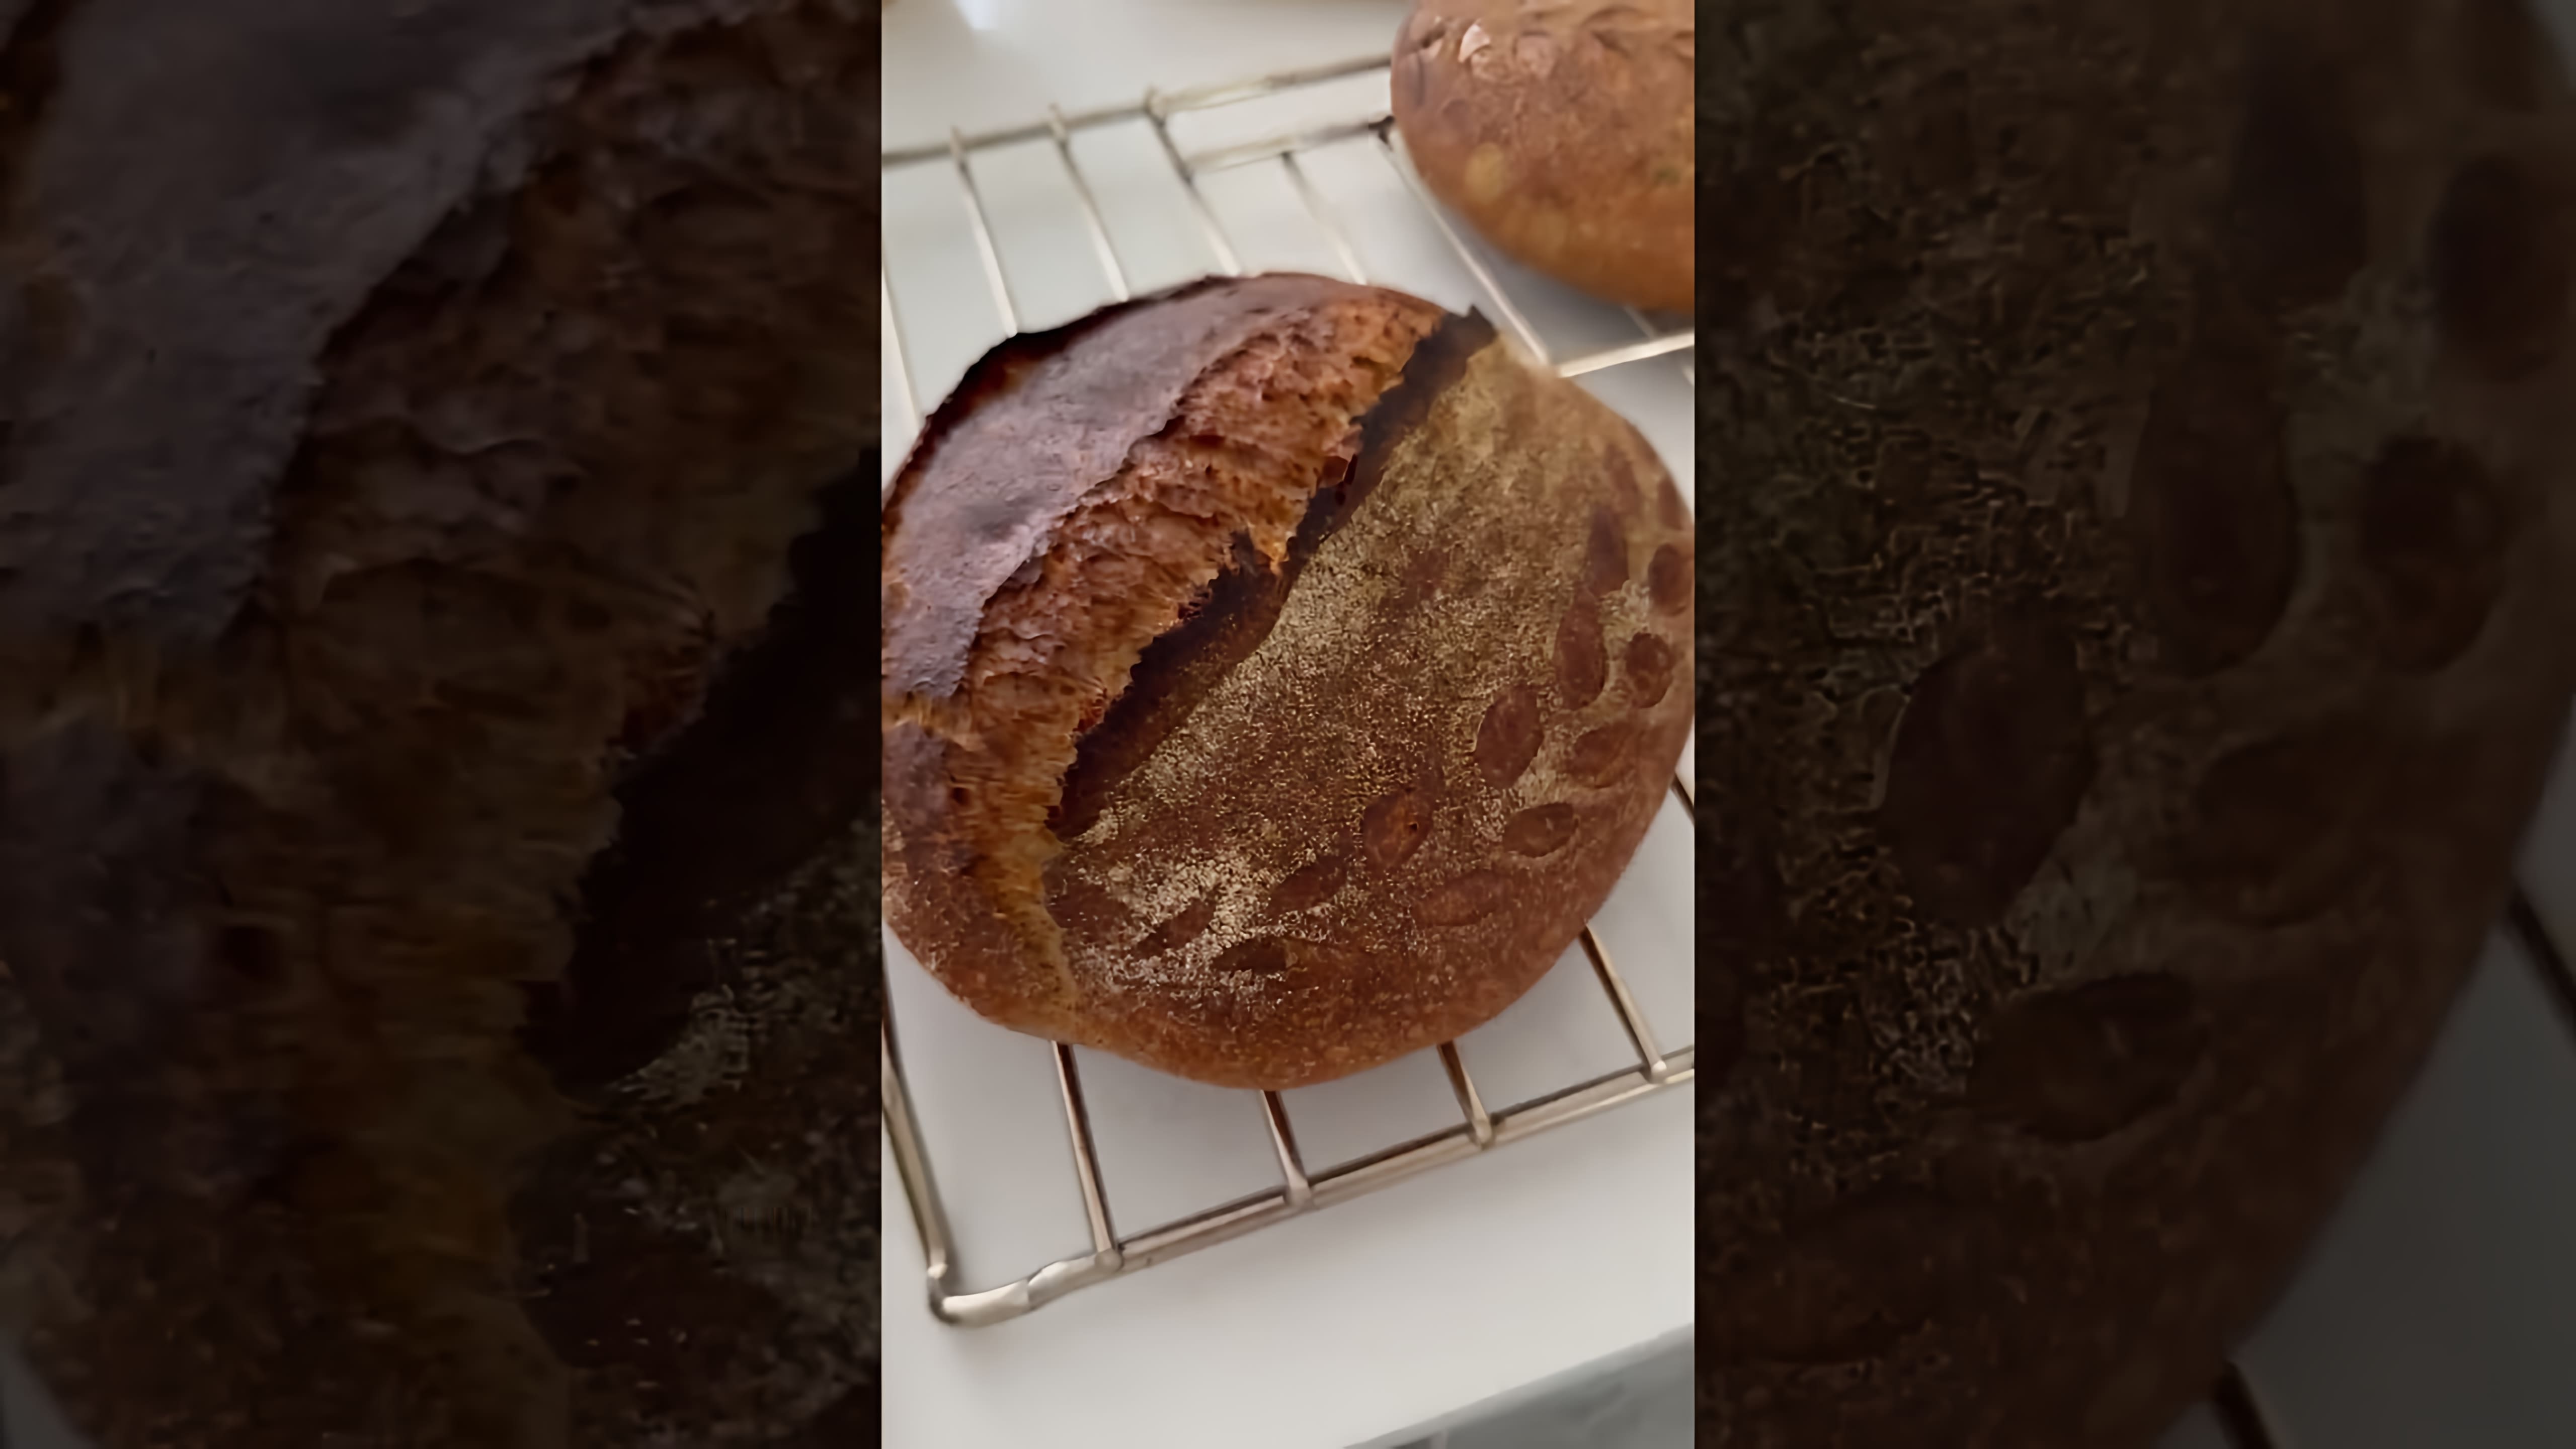 Хлеб всему голова 🌾 #хлебназакваске | Эгине | Heghineh

В этом видео-ролике рассказывается о том, как приготовить хлеб на закваске